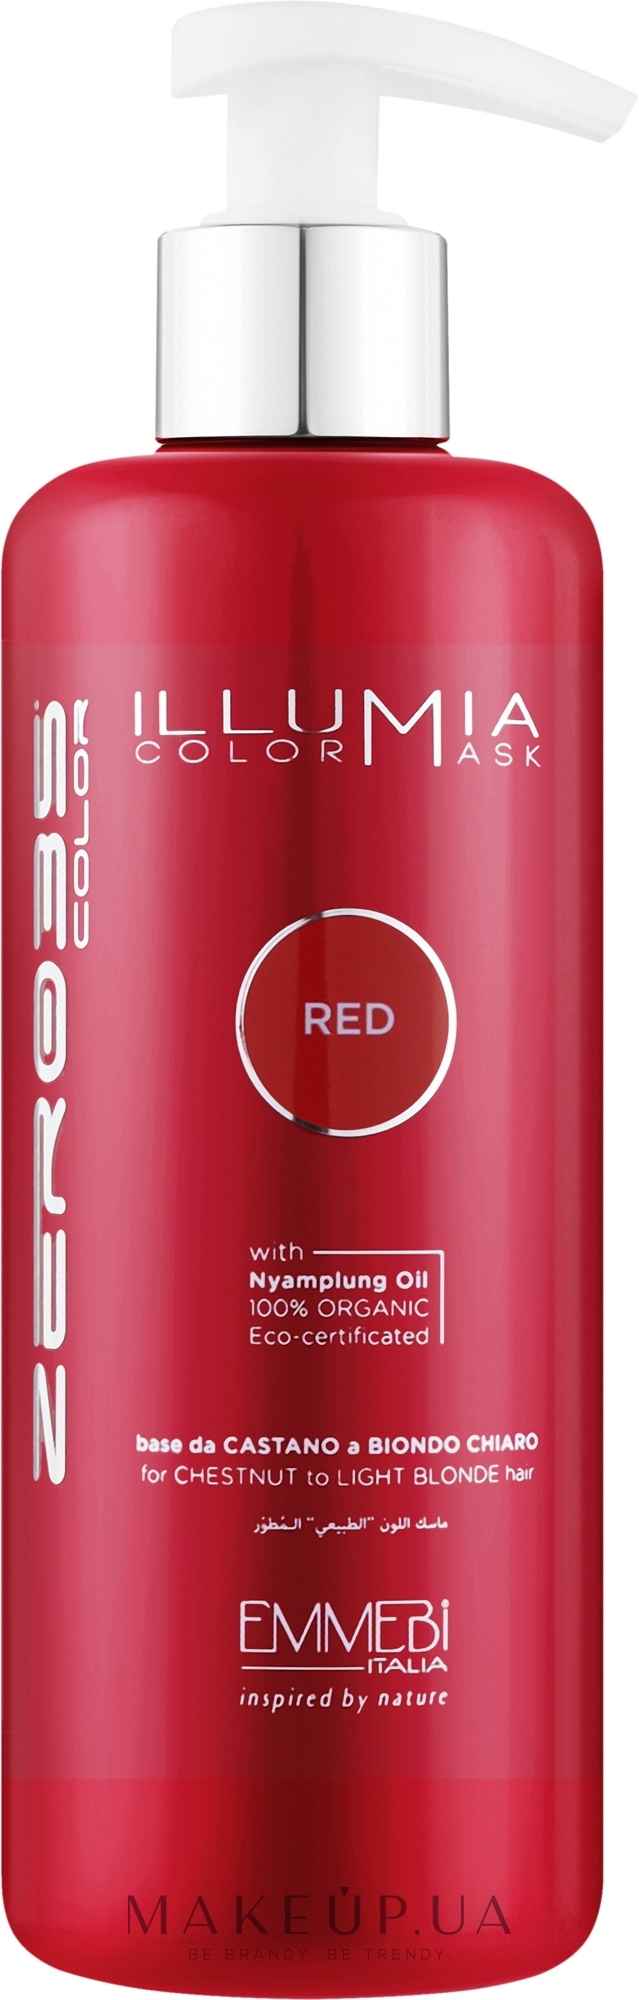 Тонирующая маска для волос - Emmebi Italia Illumia Color Mask Red — фото 300ml